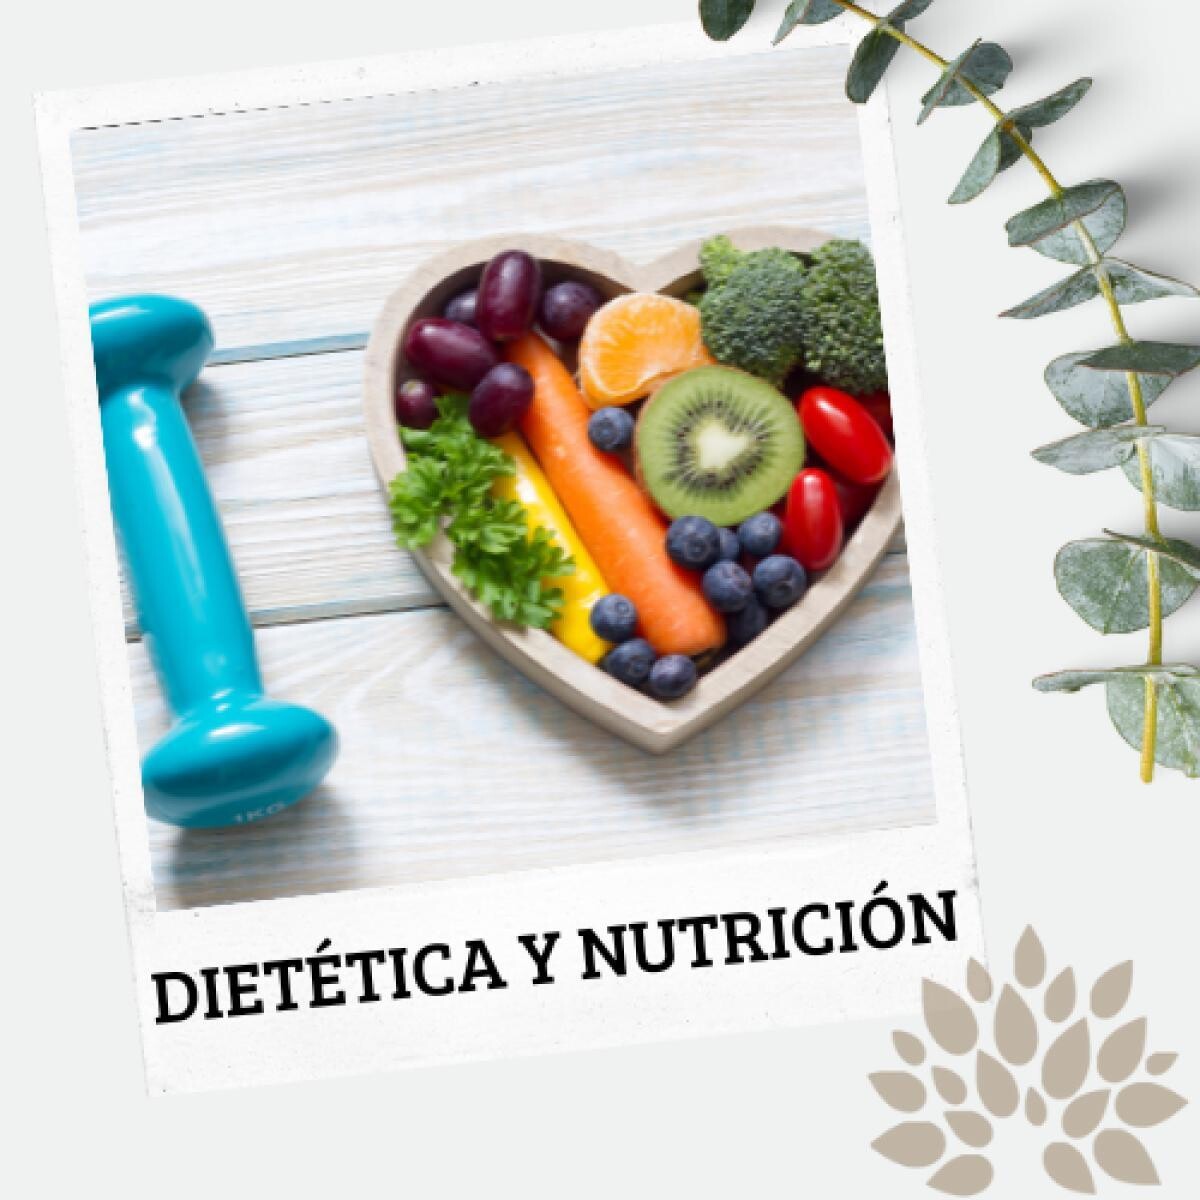 Dietética y nutrición